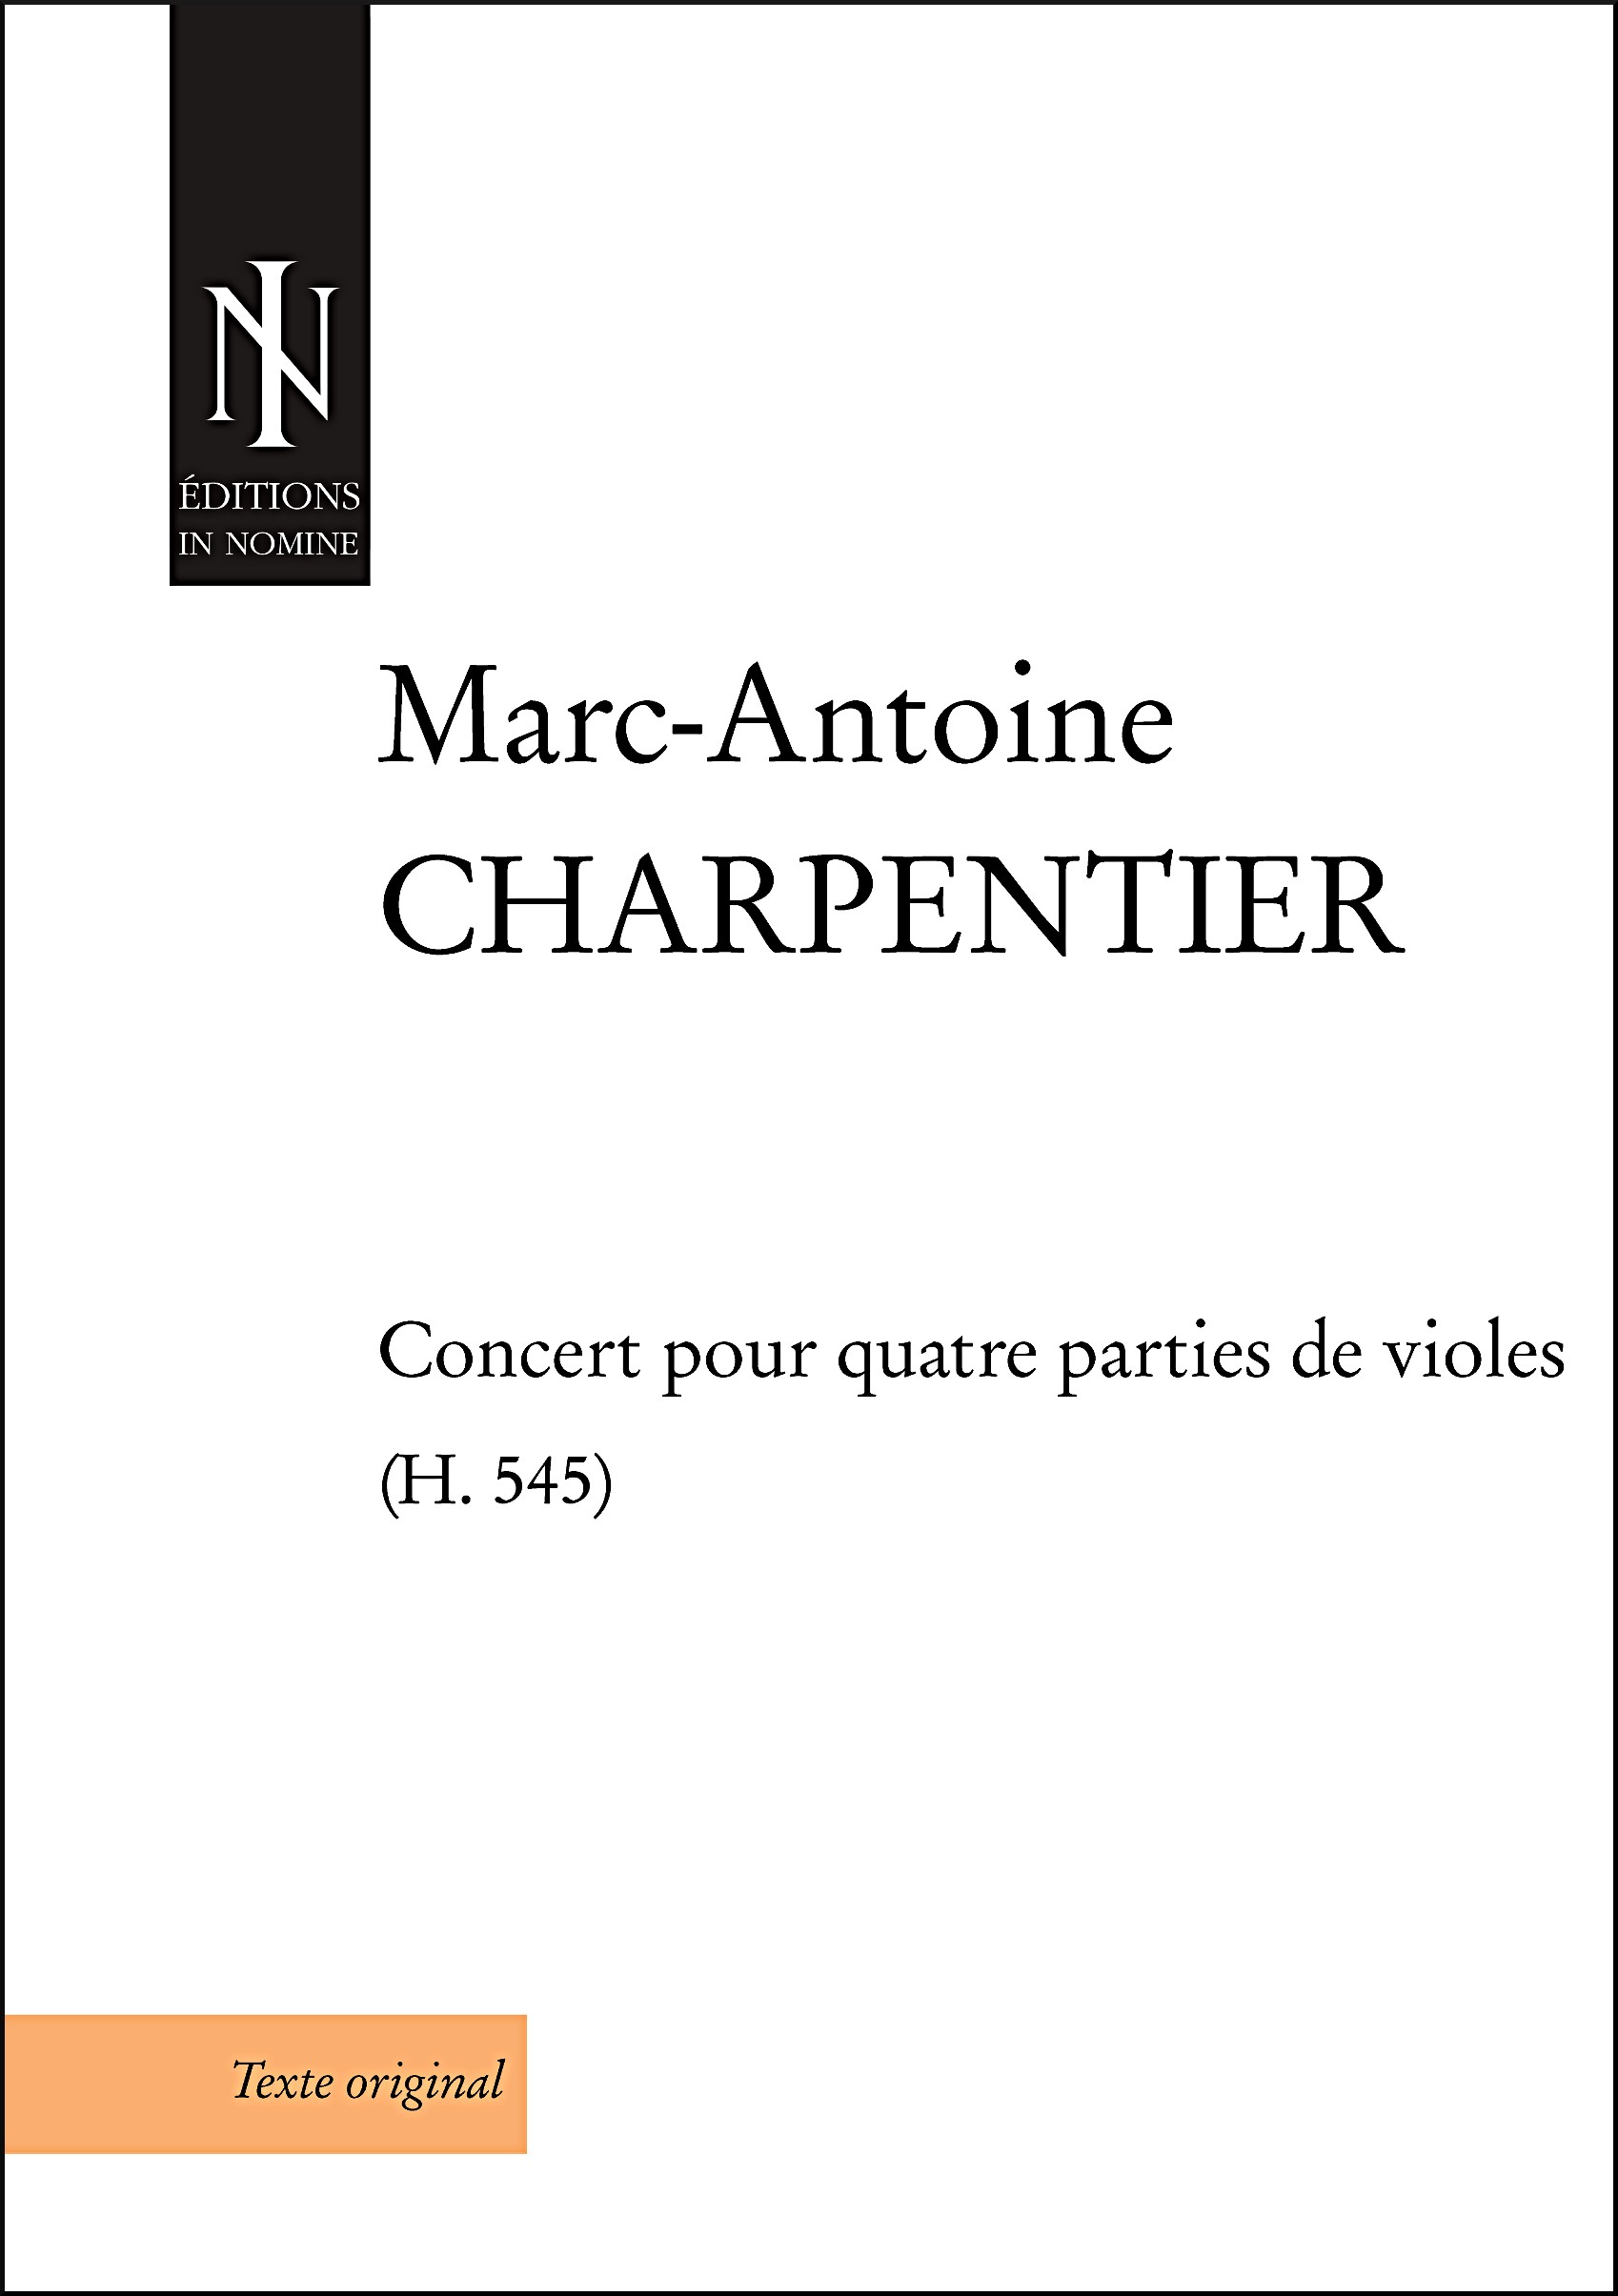 Concert Pour Quatre Parties De Violes (H.545)